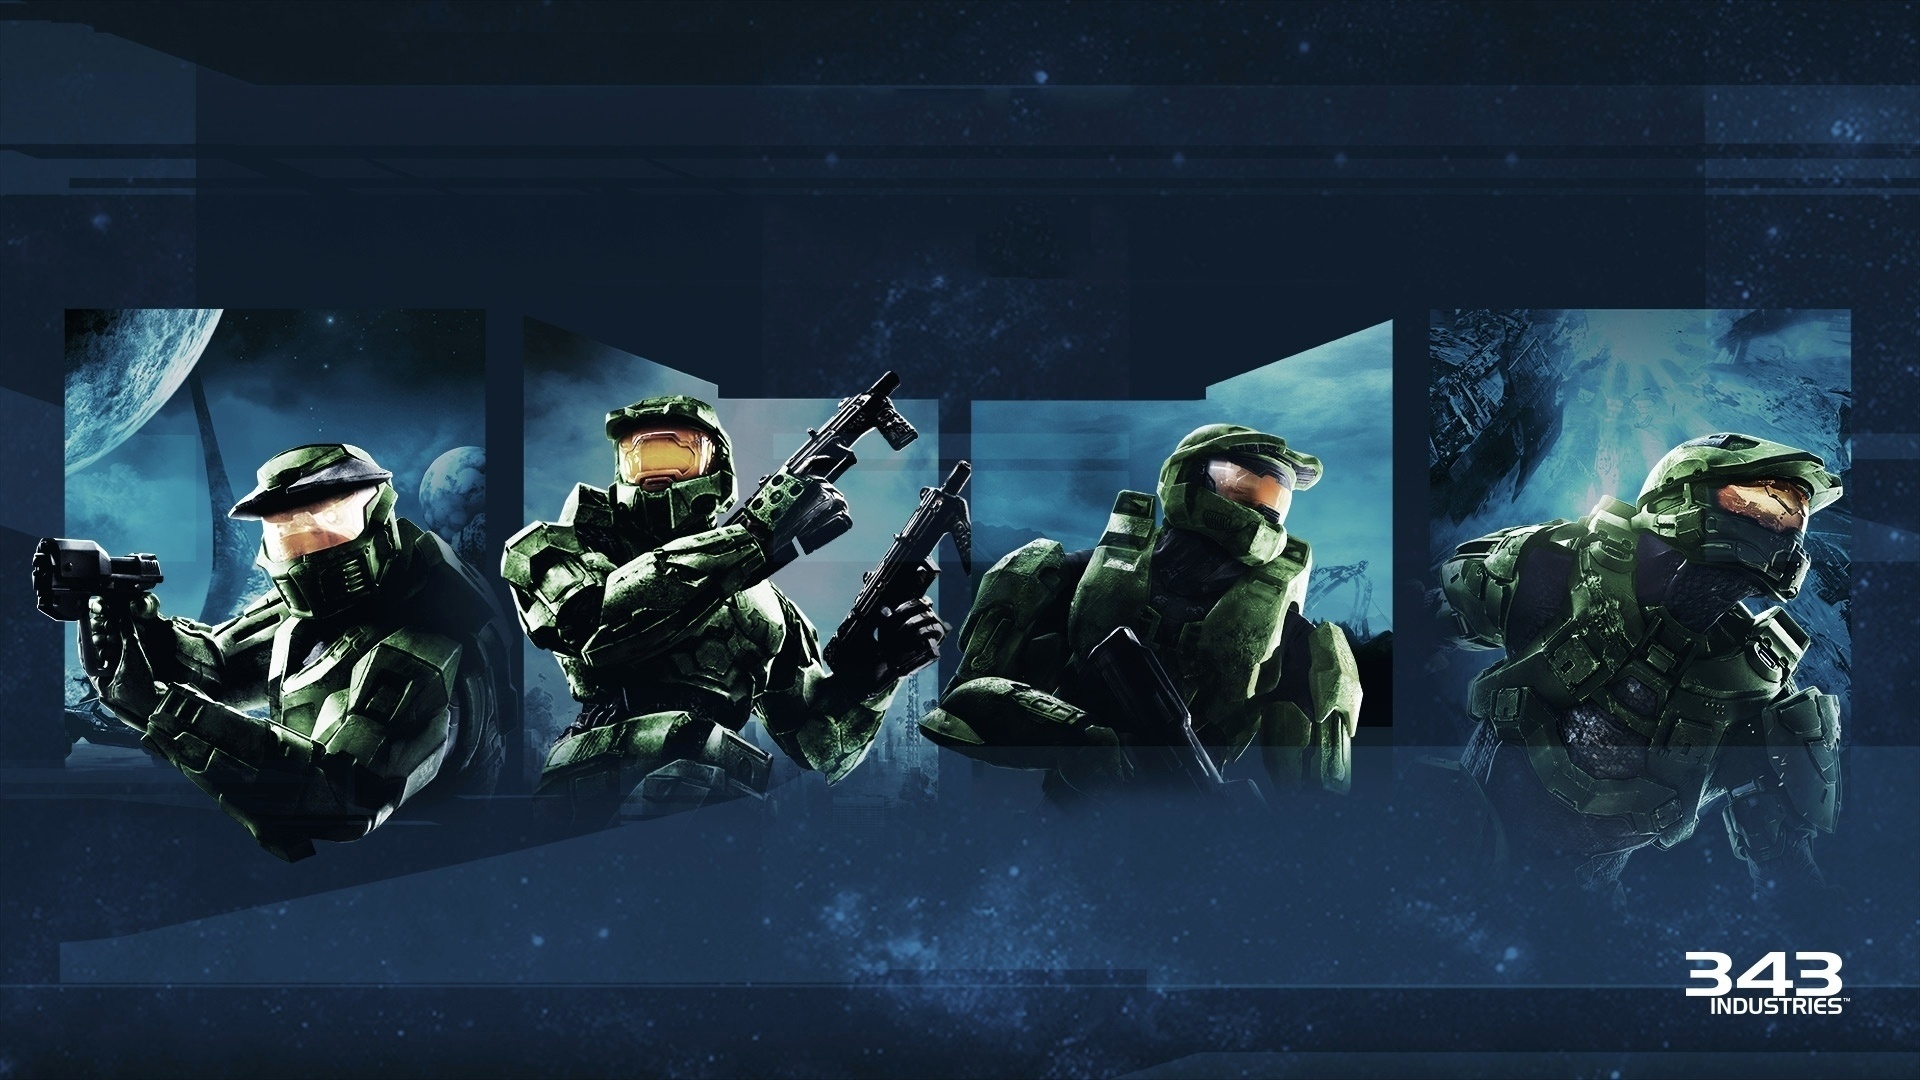 Halo: série baseada em um dos maiores jogos de virtuais do mundo?